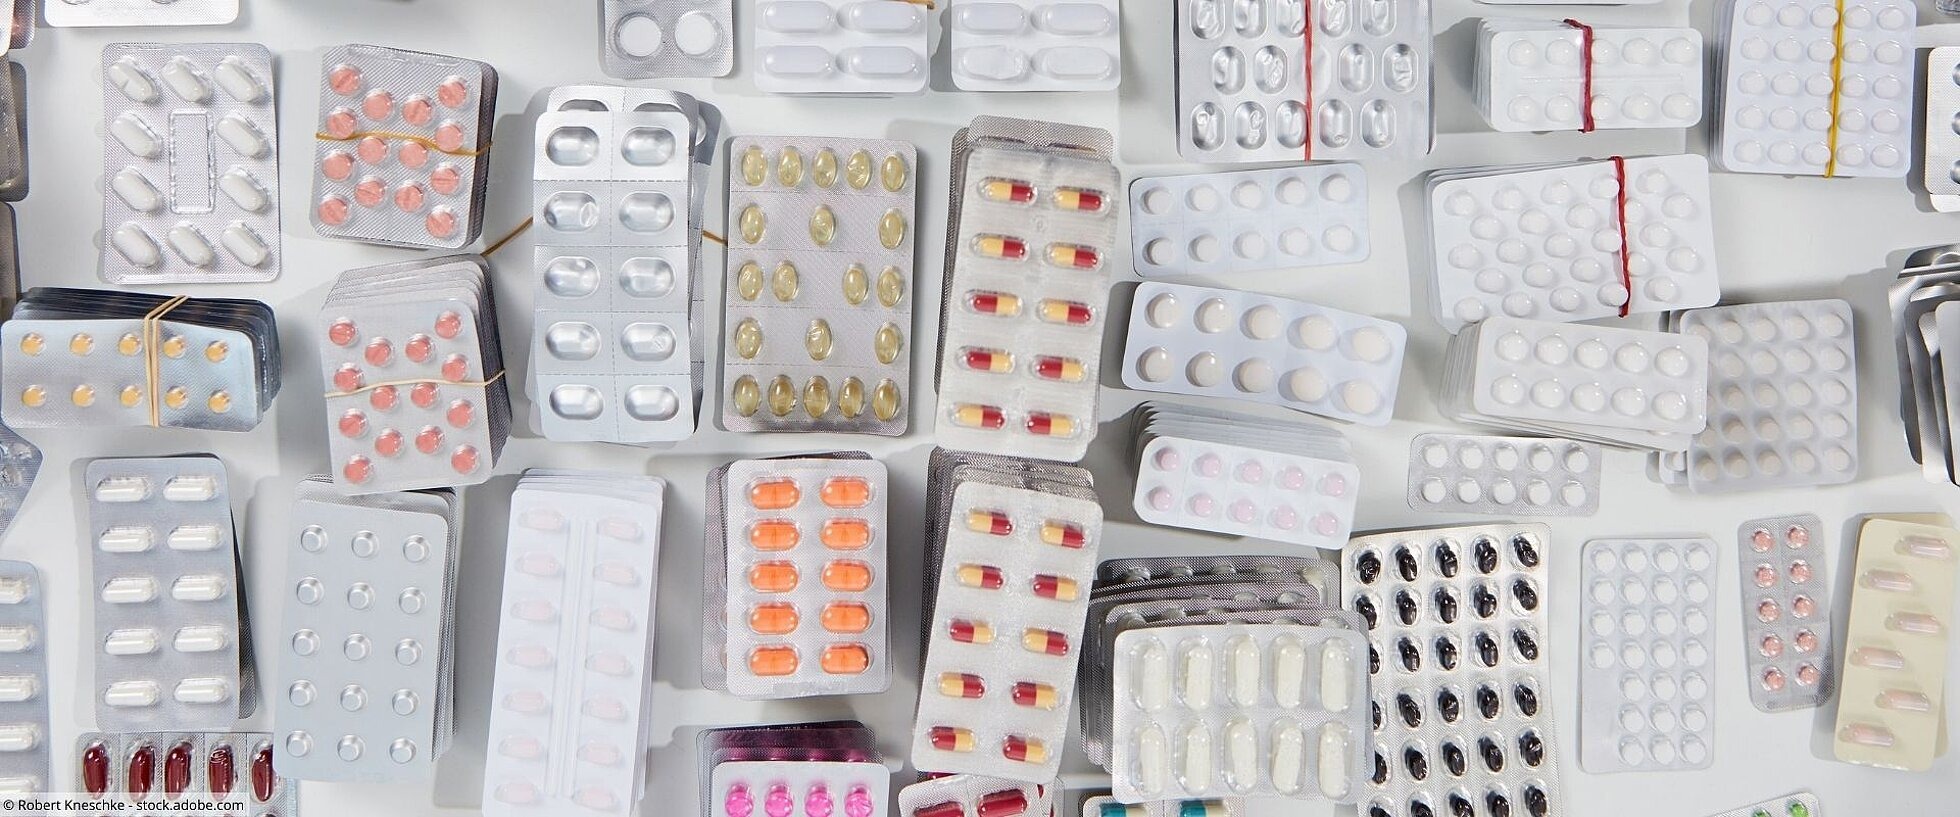 Stapel mit verschiedenen Tabletten